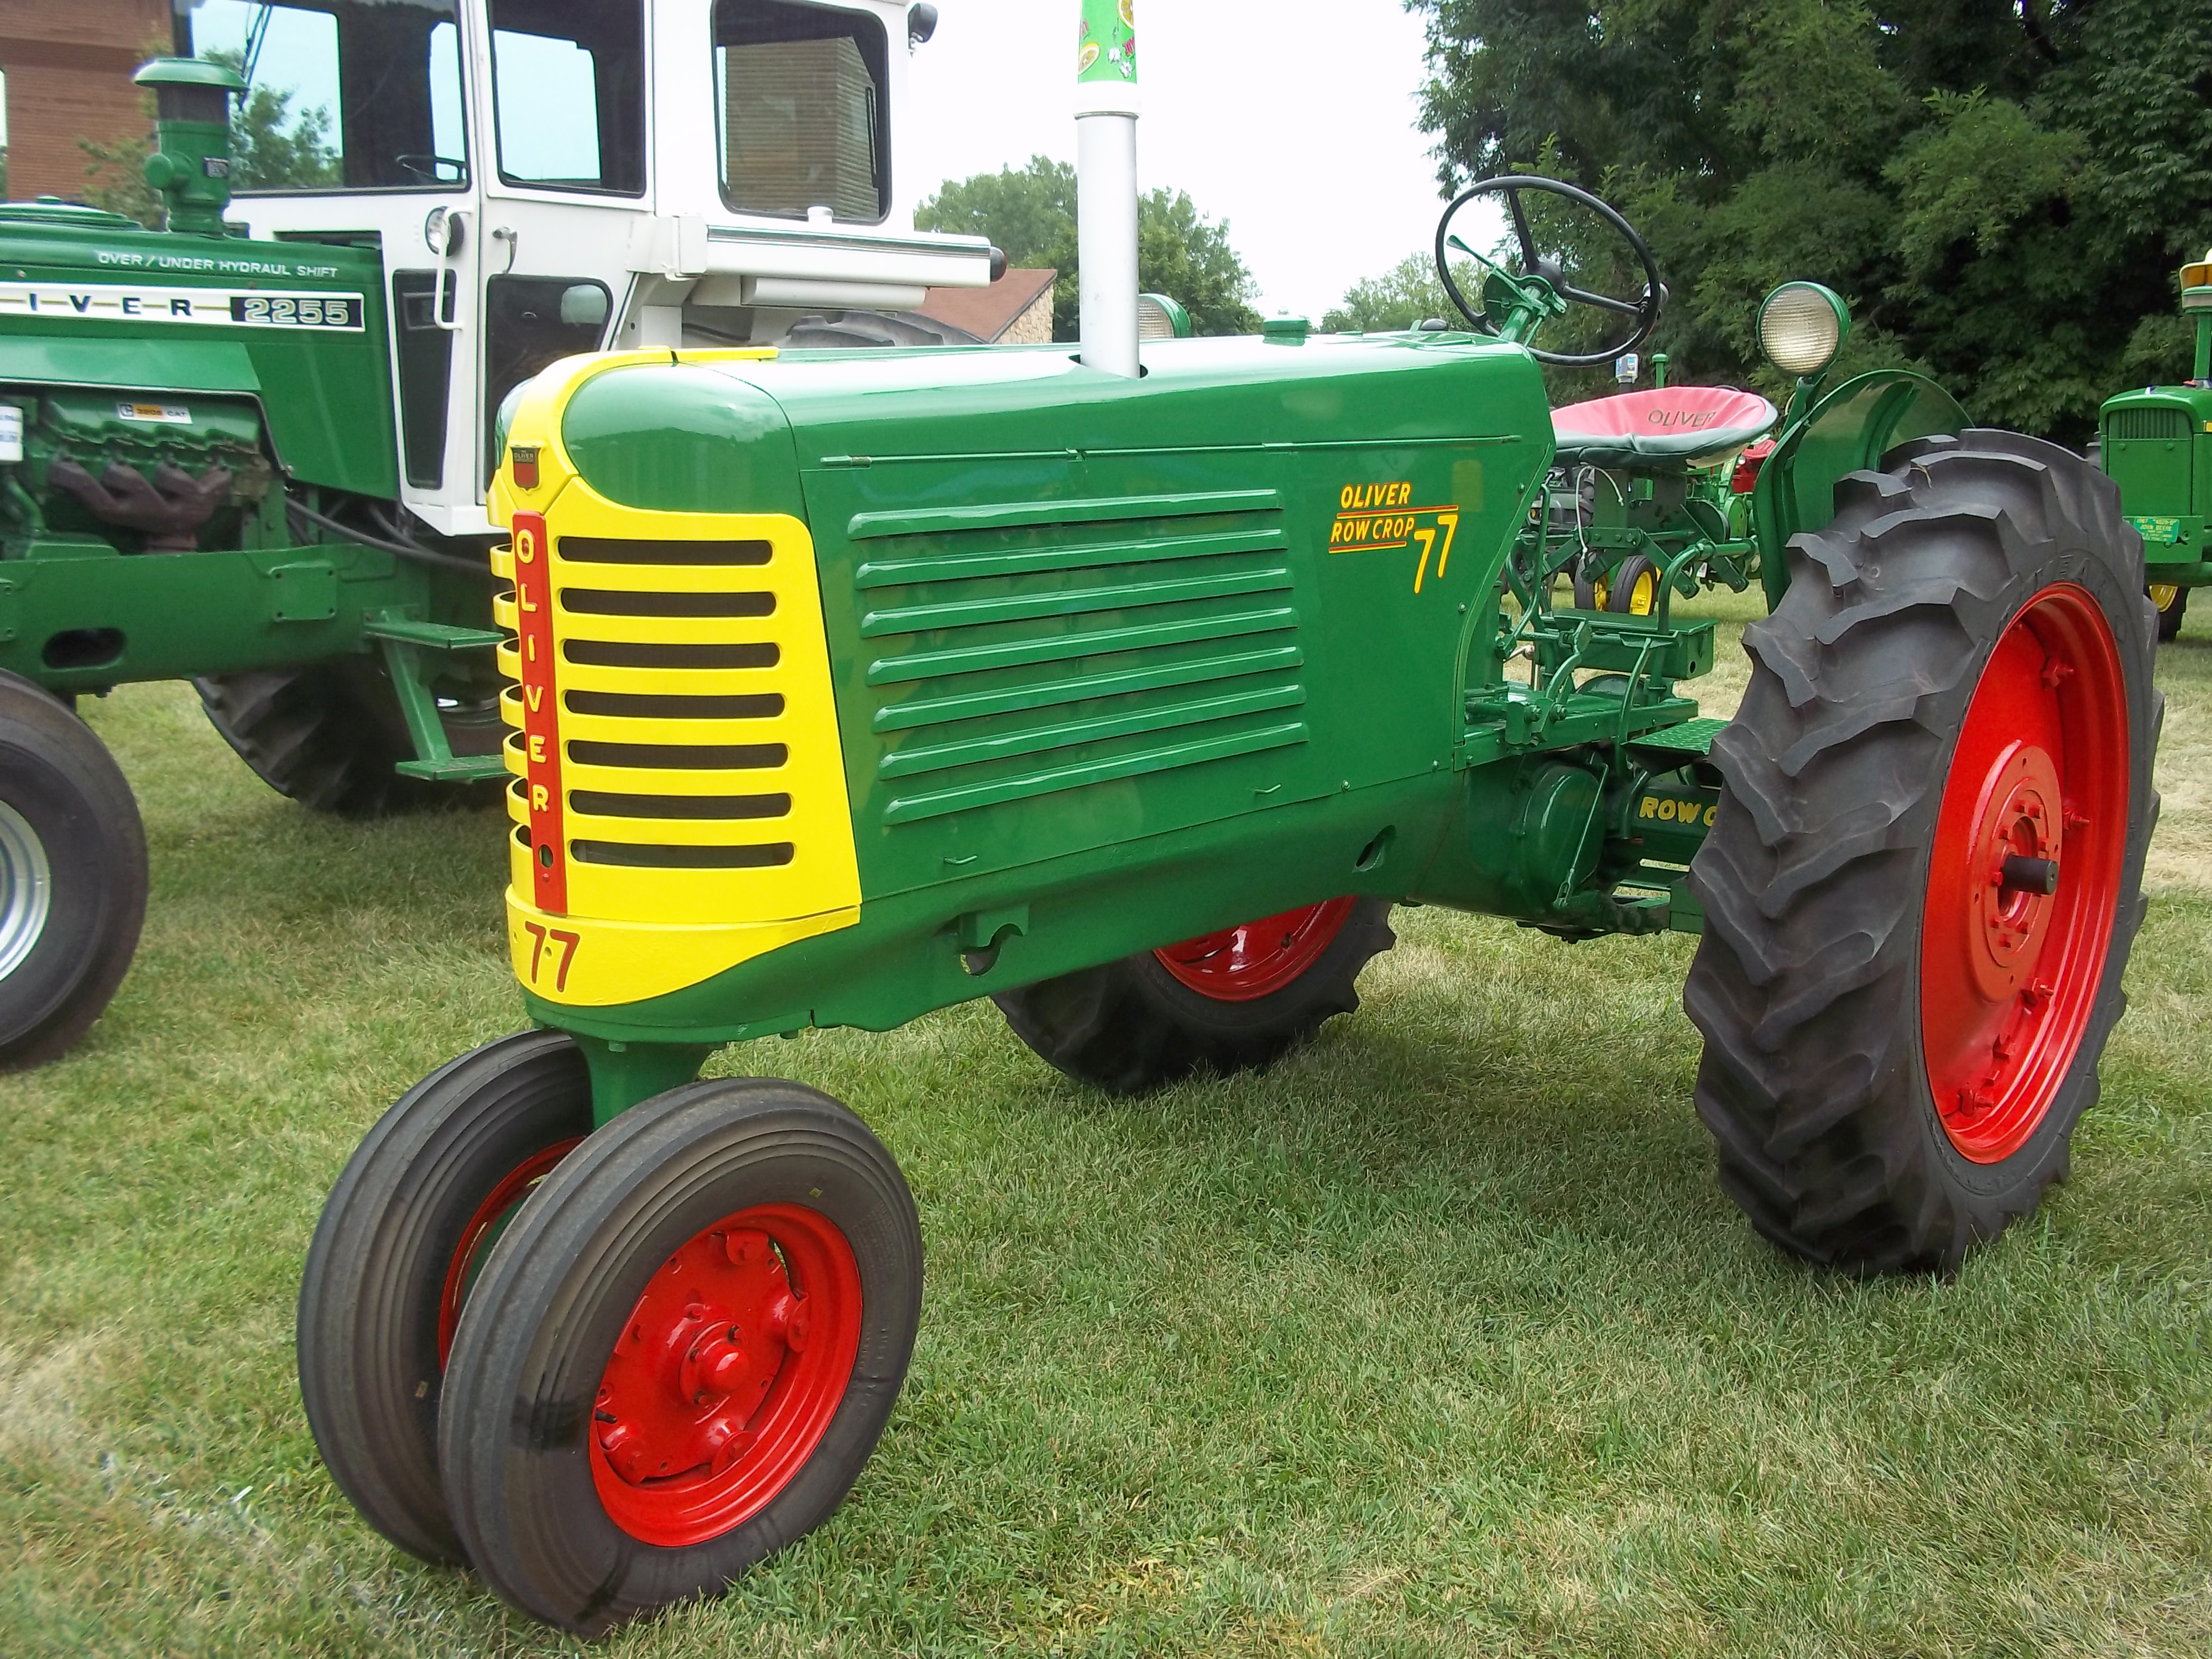 Oliver 77 | Oliver Tractors & Equipment | Pinterest